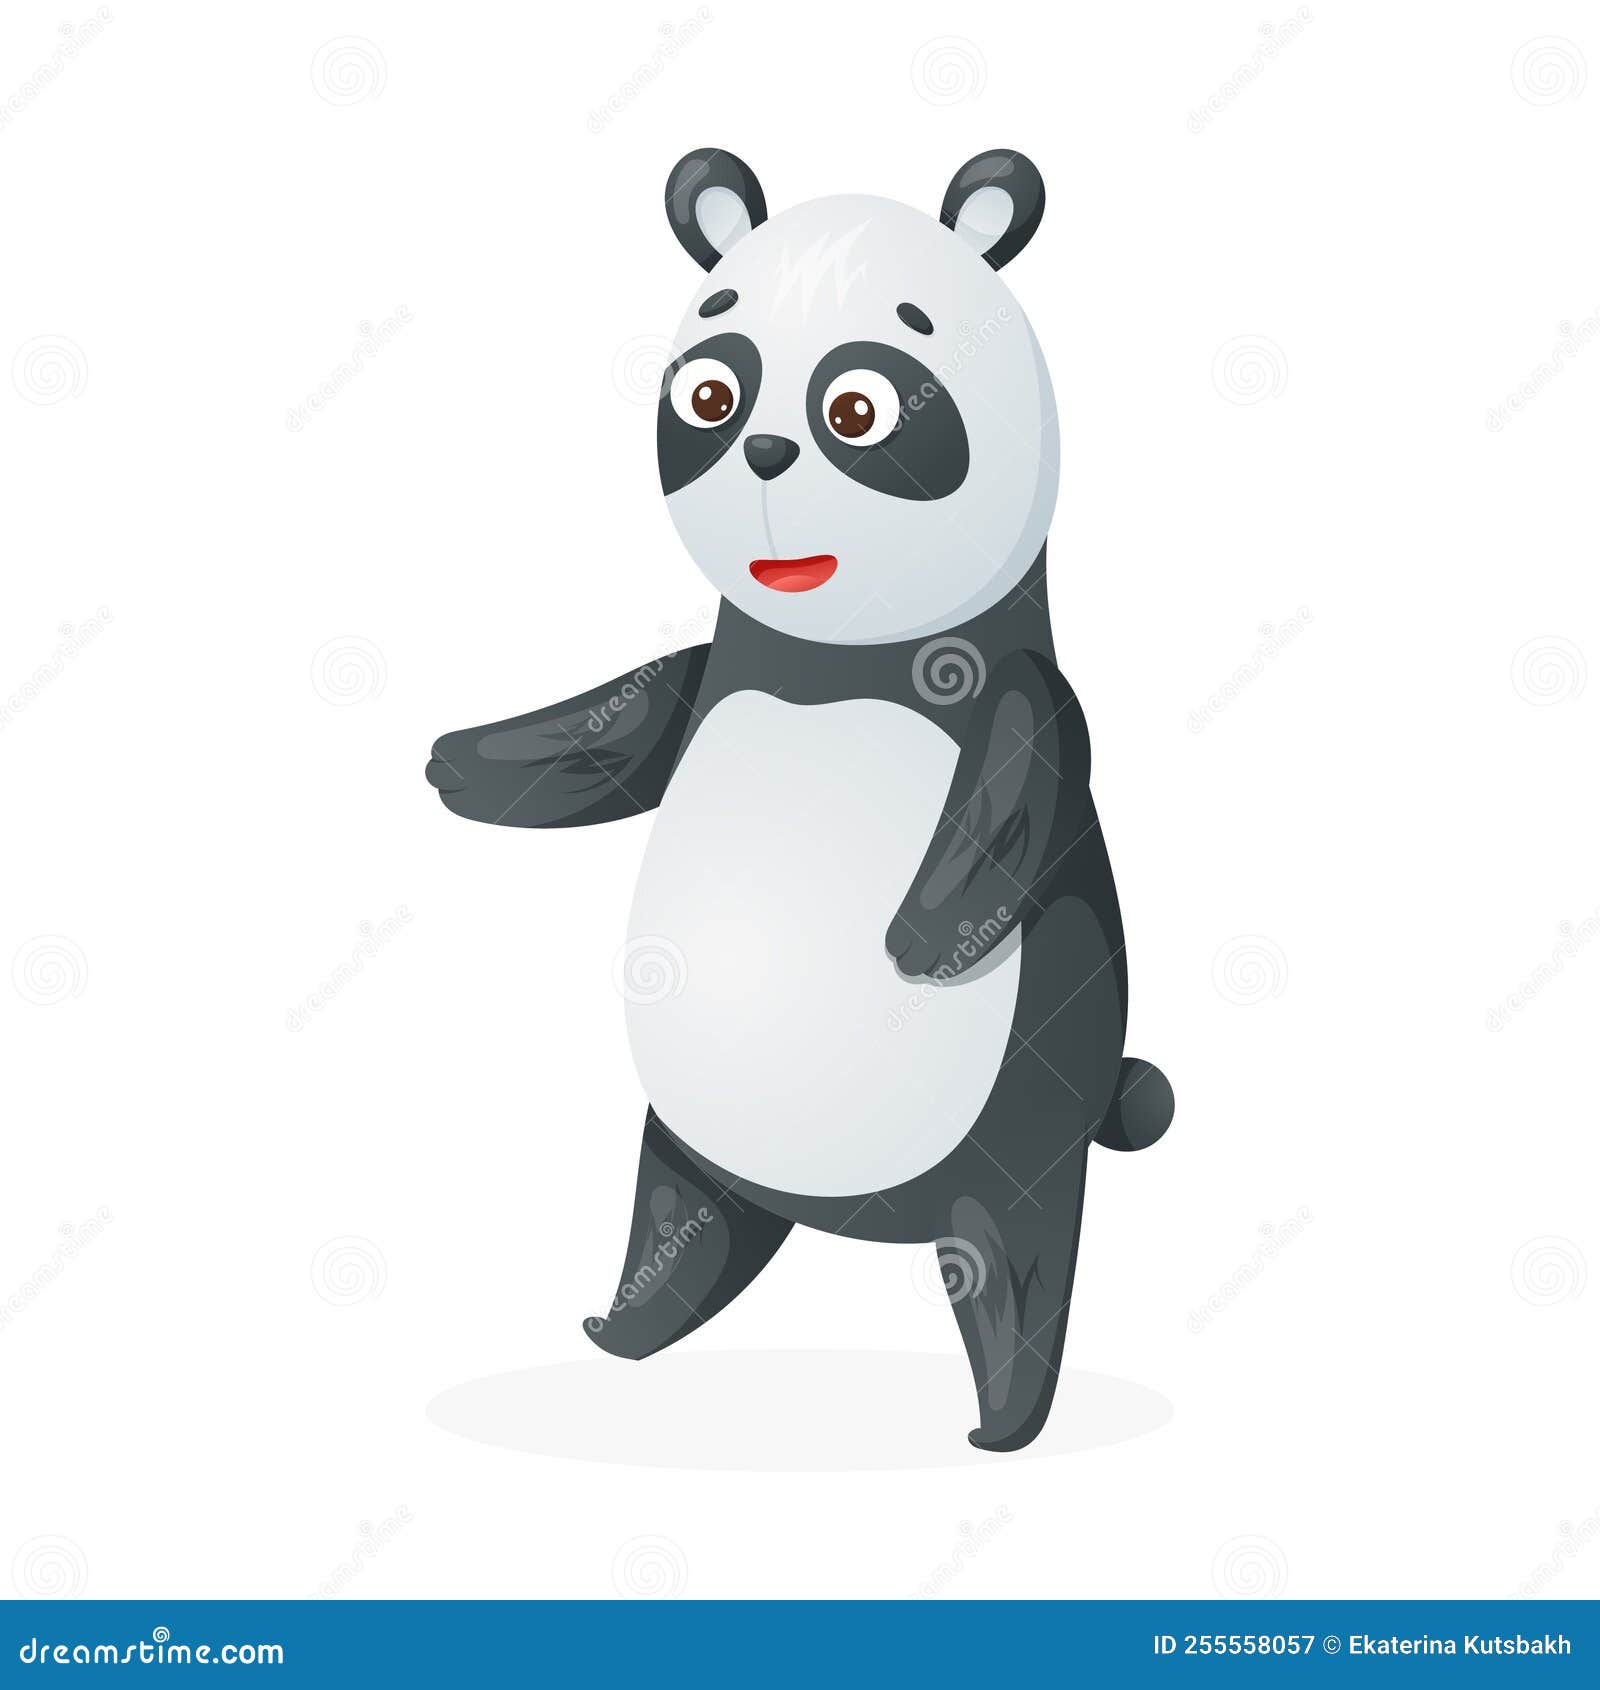 Ilustração em vetor de animal fofo de desenho animado de panda